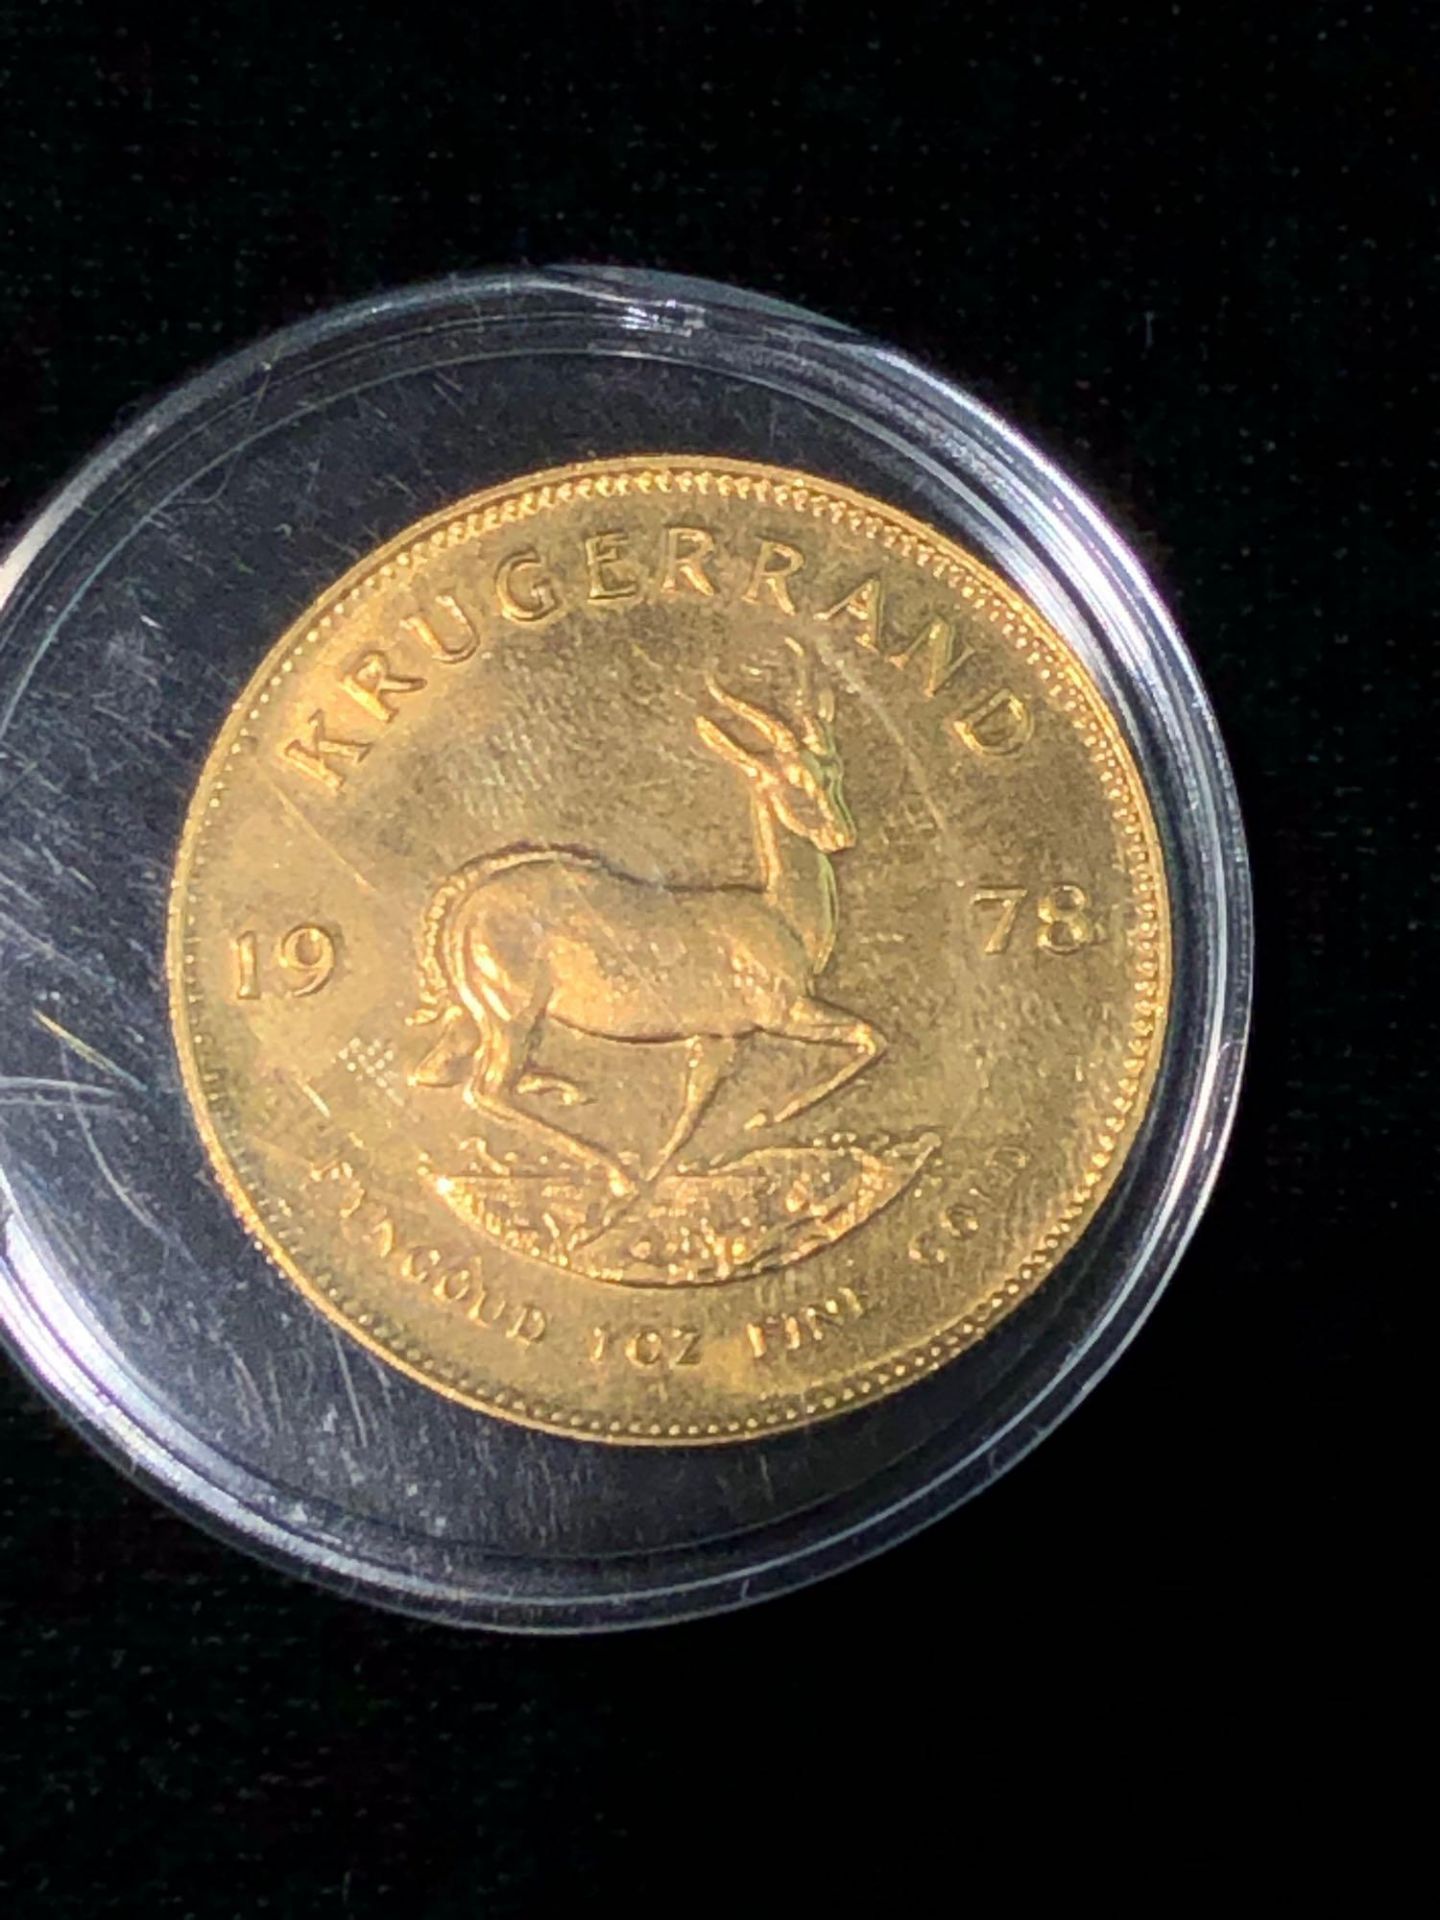 1978 1 OZT FINE GOLD KRUGERRAND COIN - Image 4 of 4